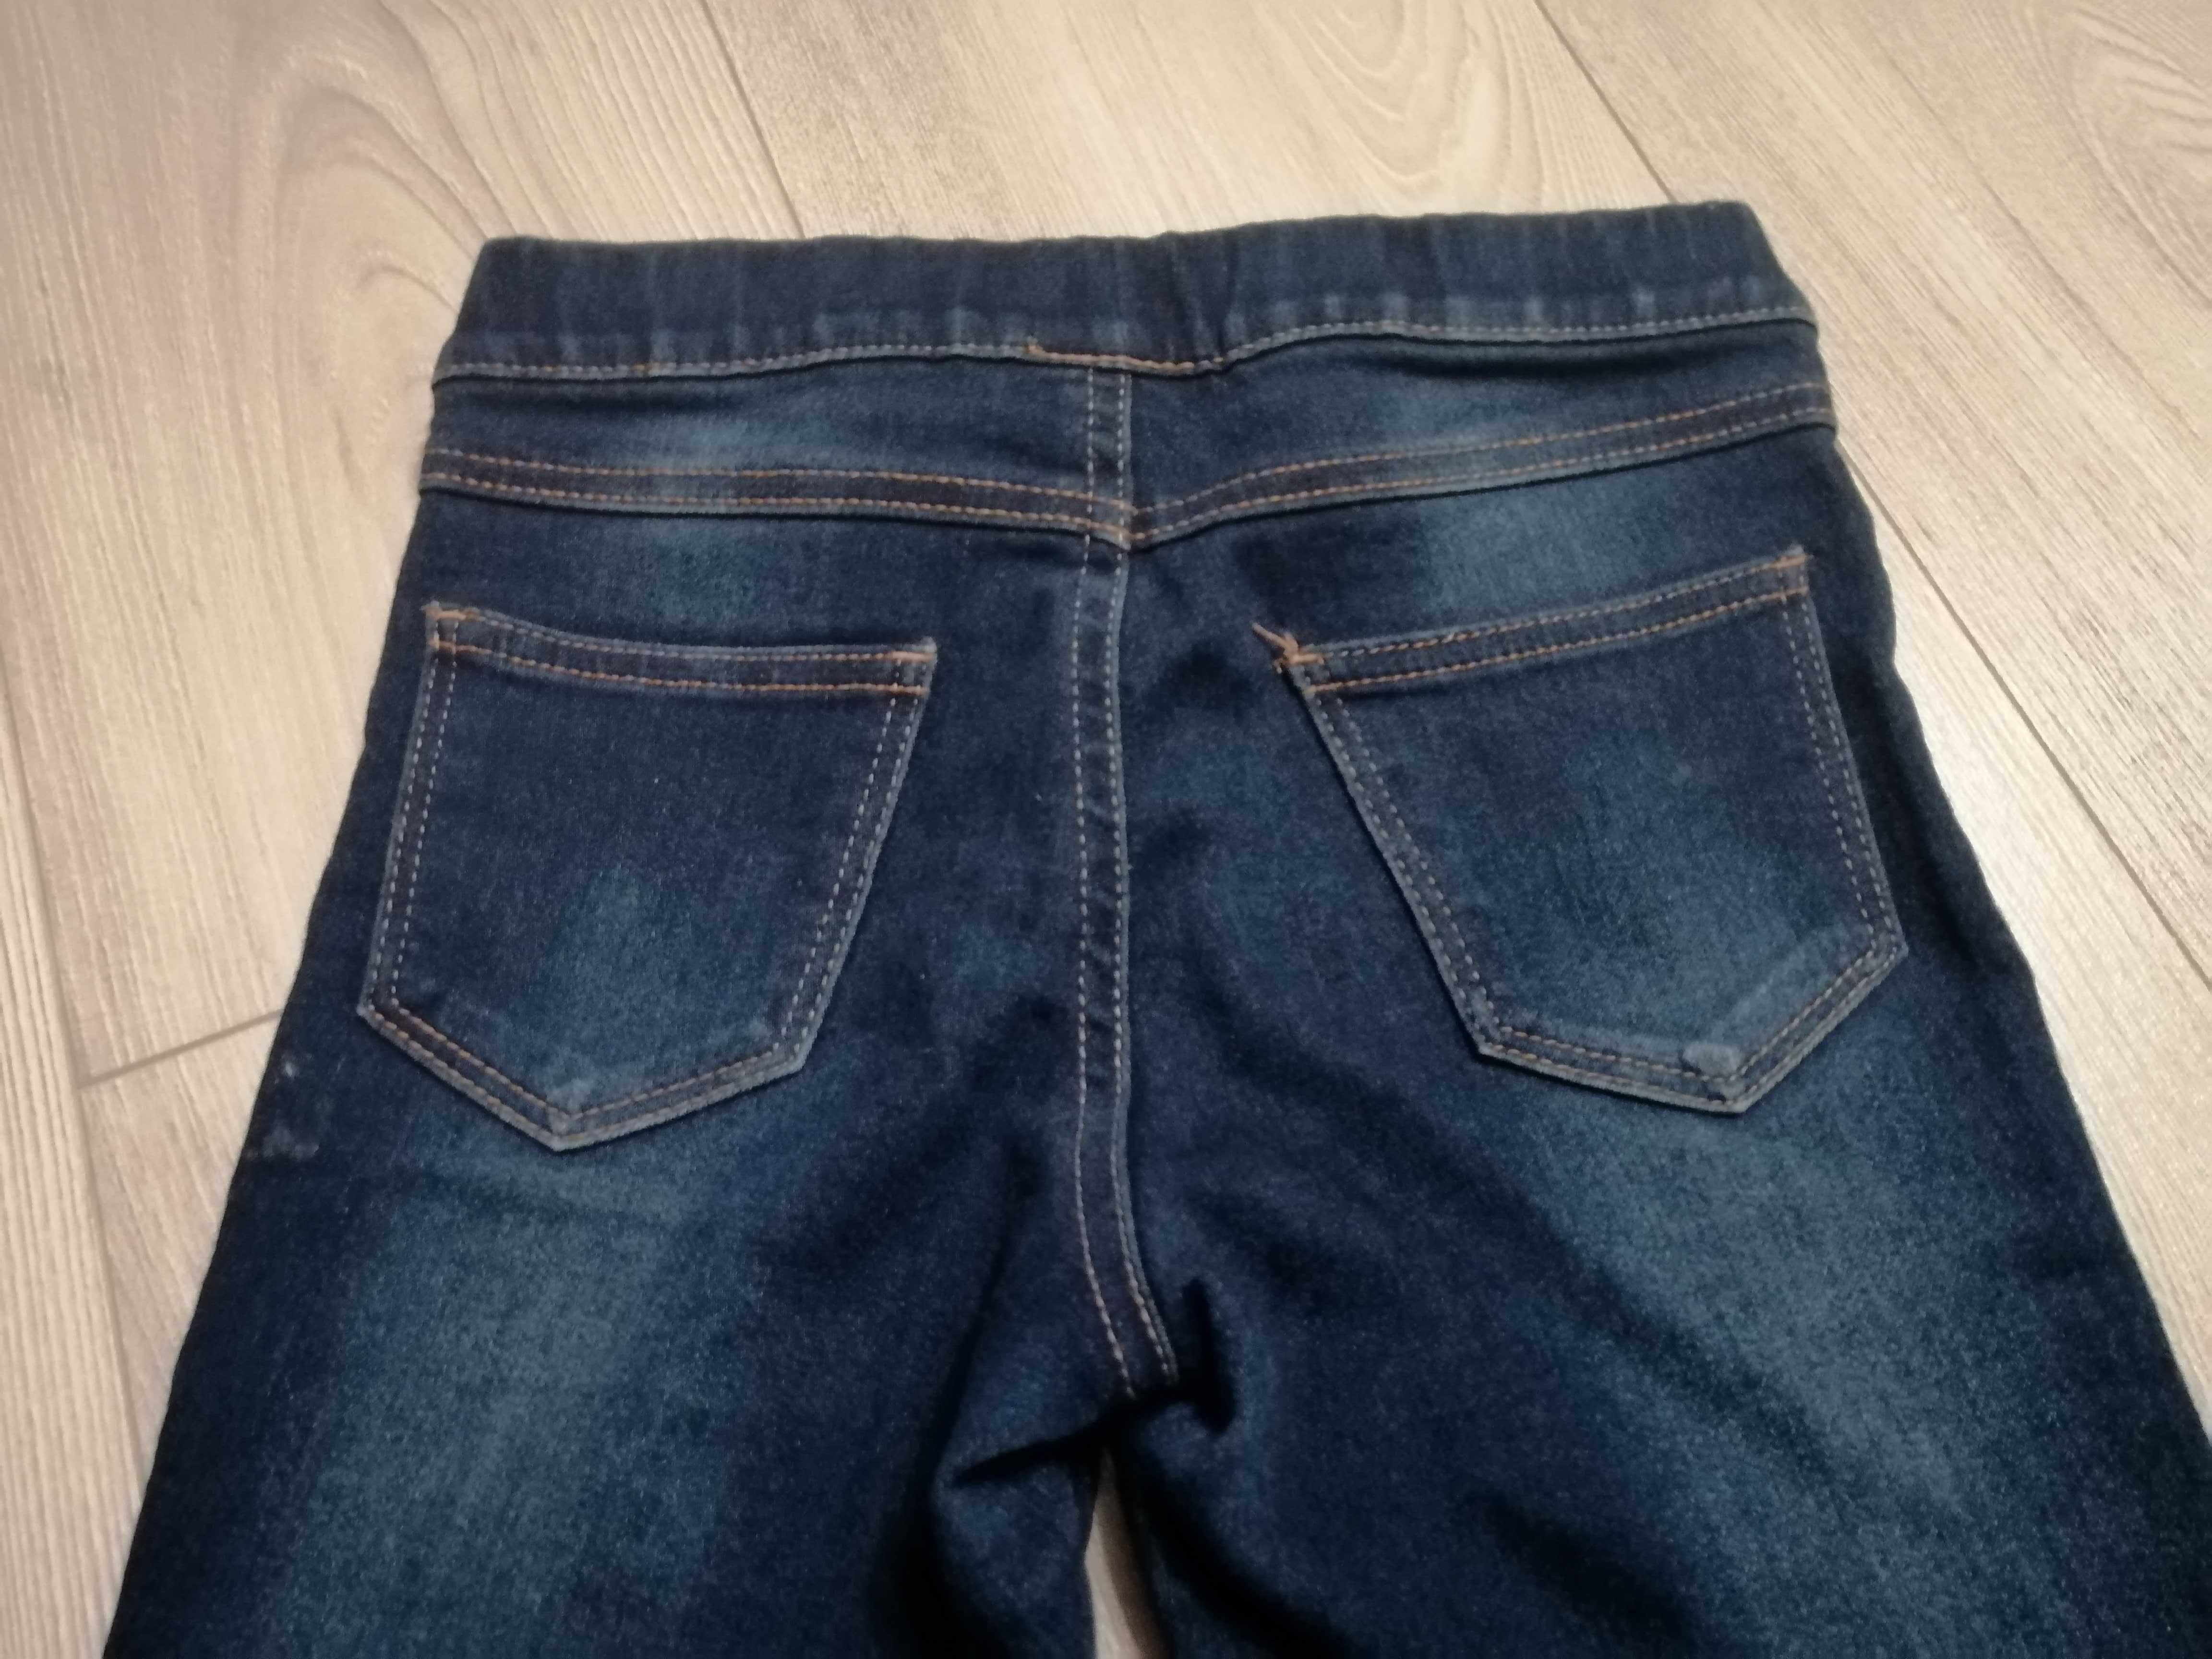 spodnie/legginsy jeansowe firmy Destination, dziewczynka, r. 128/134